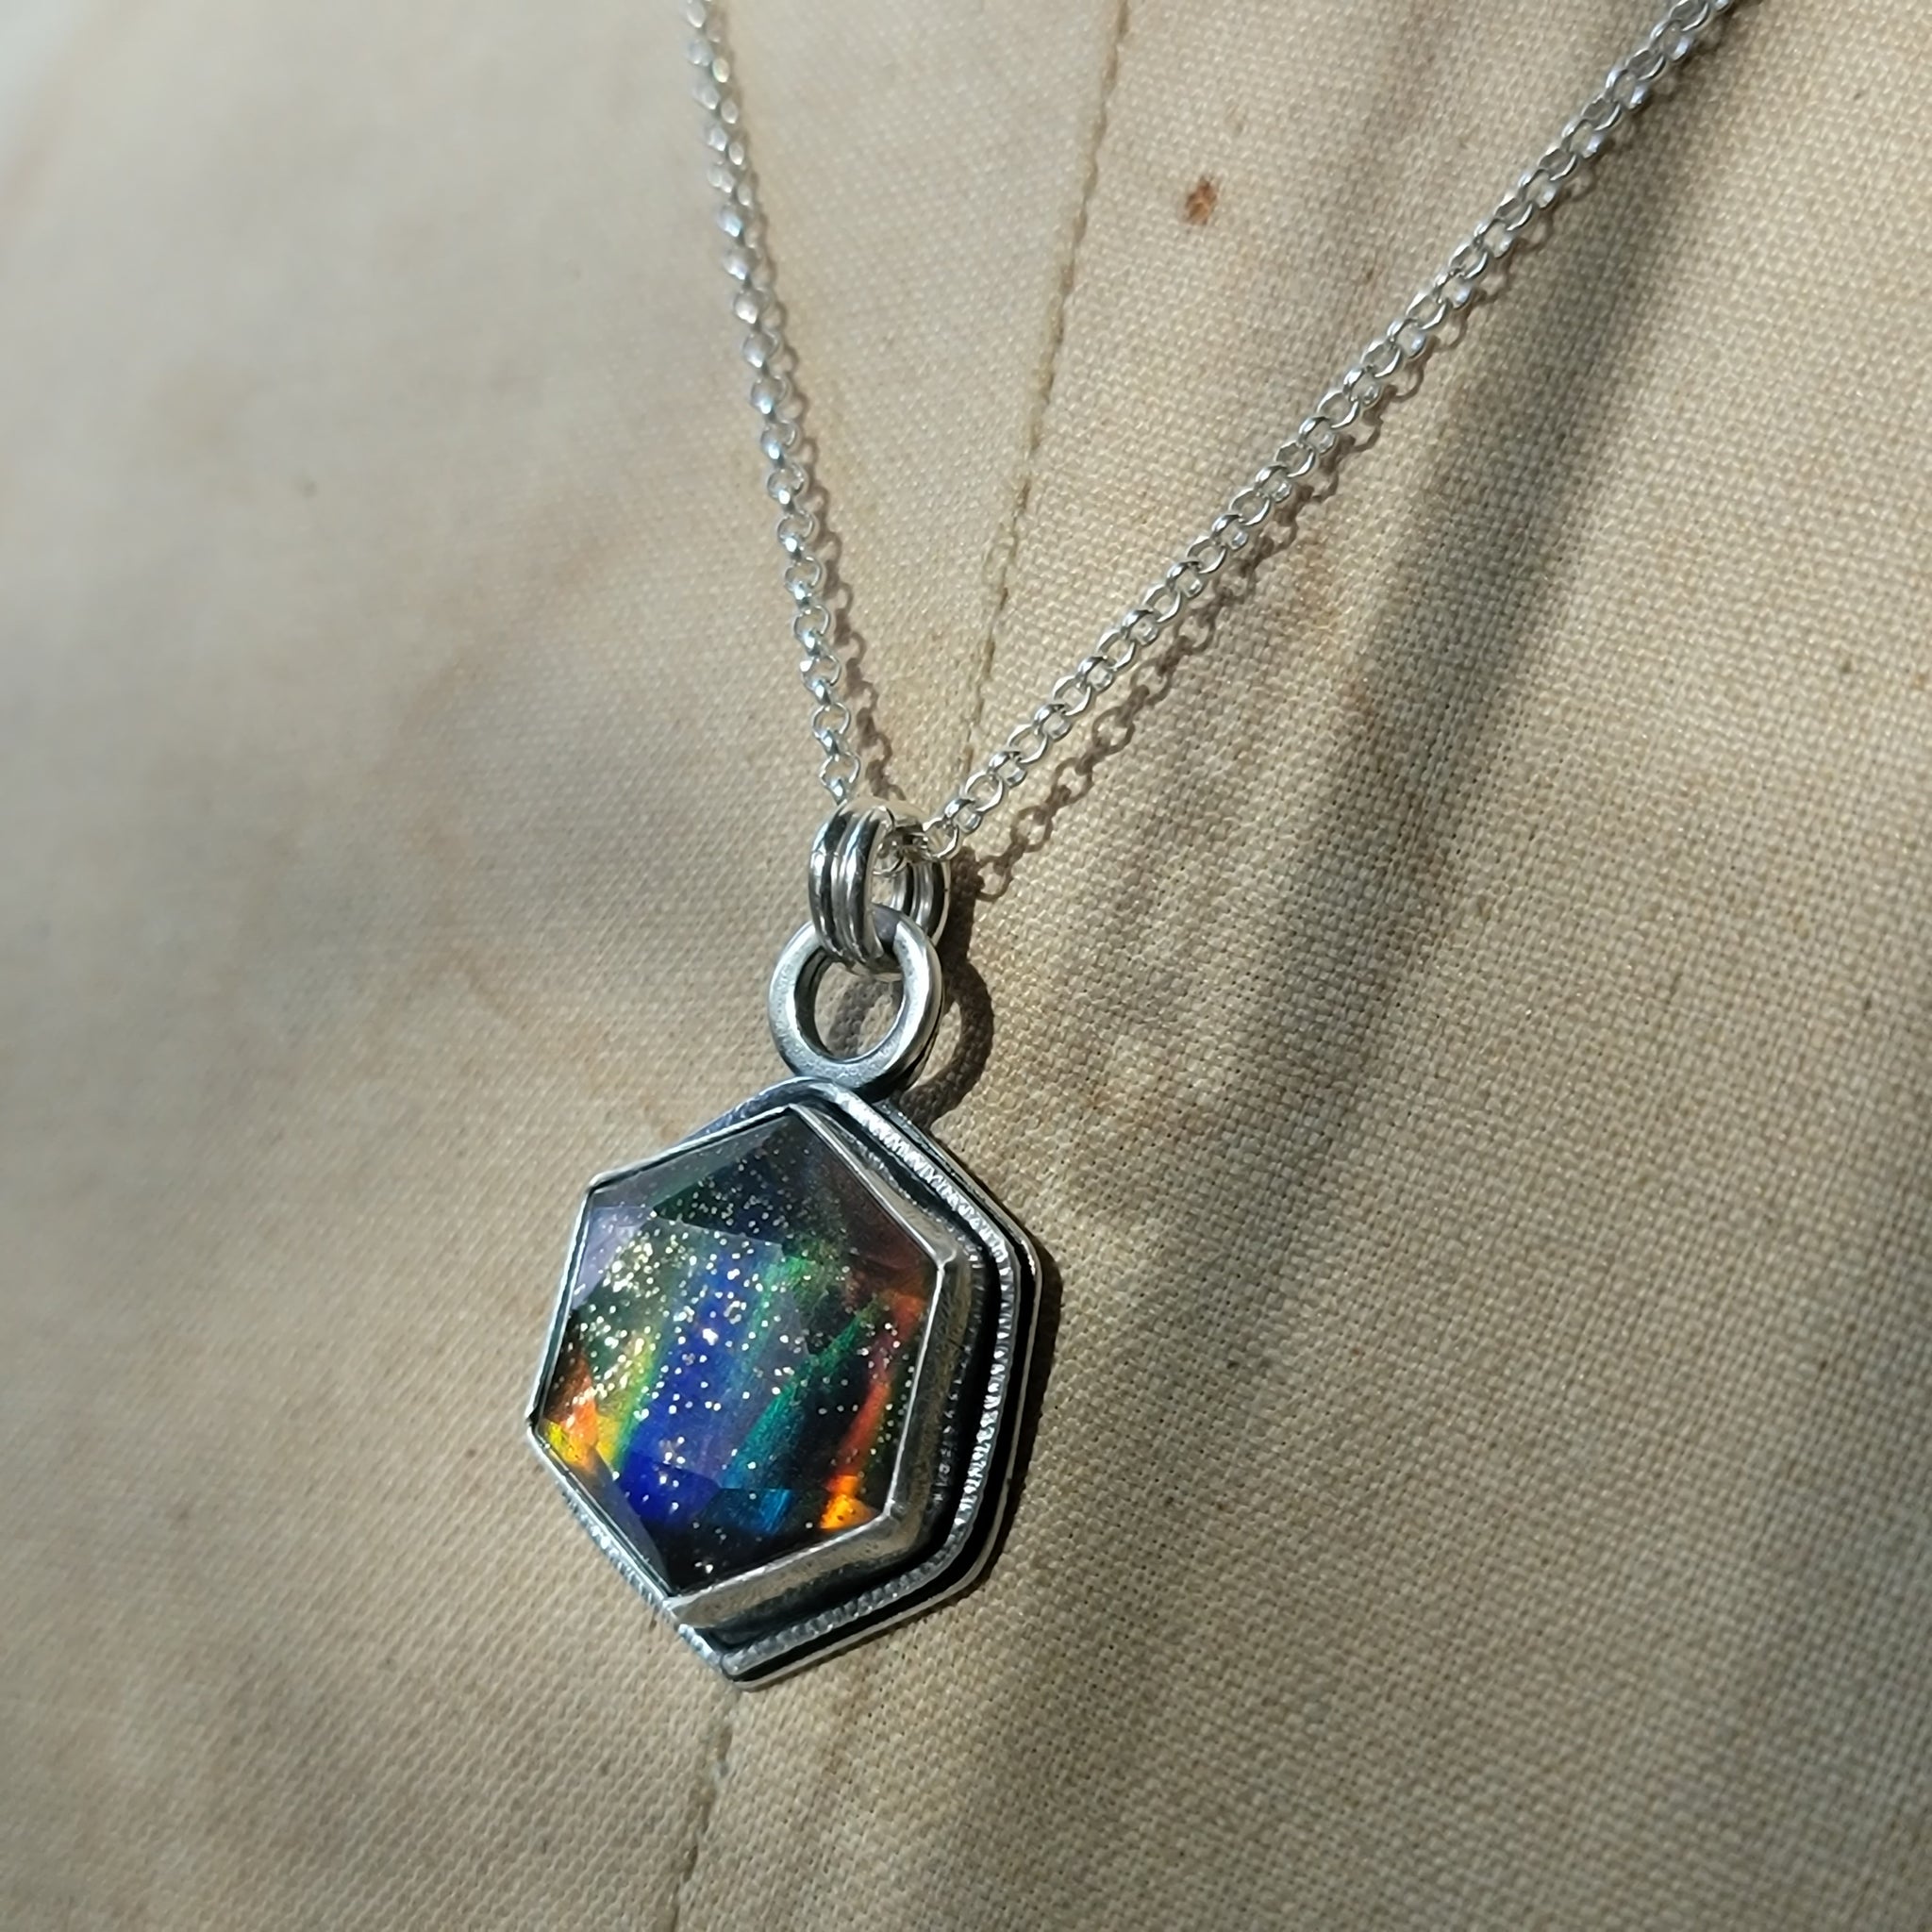 Crystal & Glitter Opal Doublet Pendant in Sterling Silver